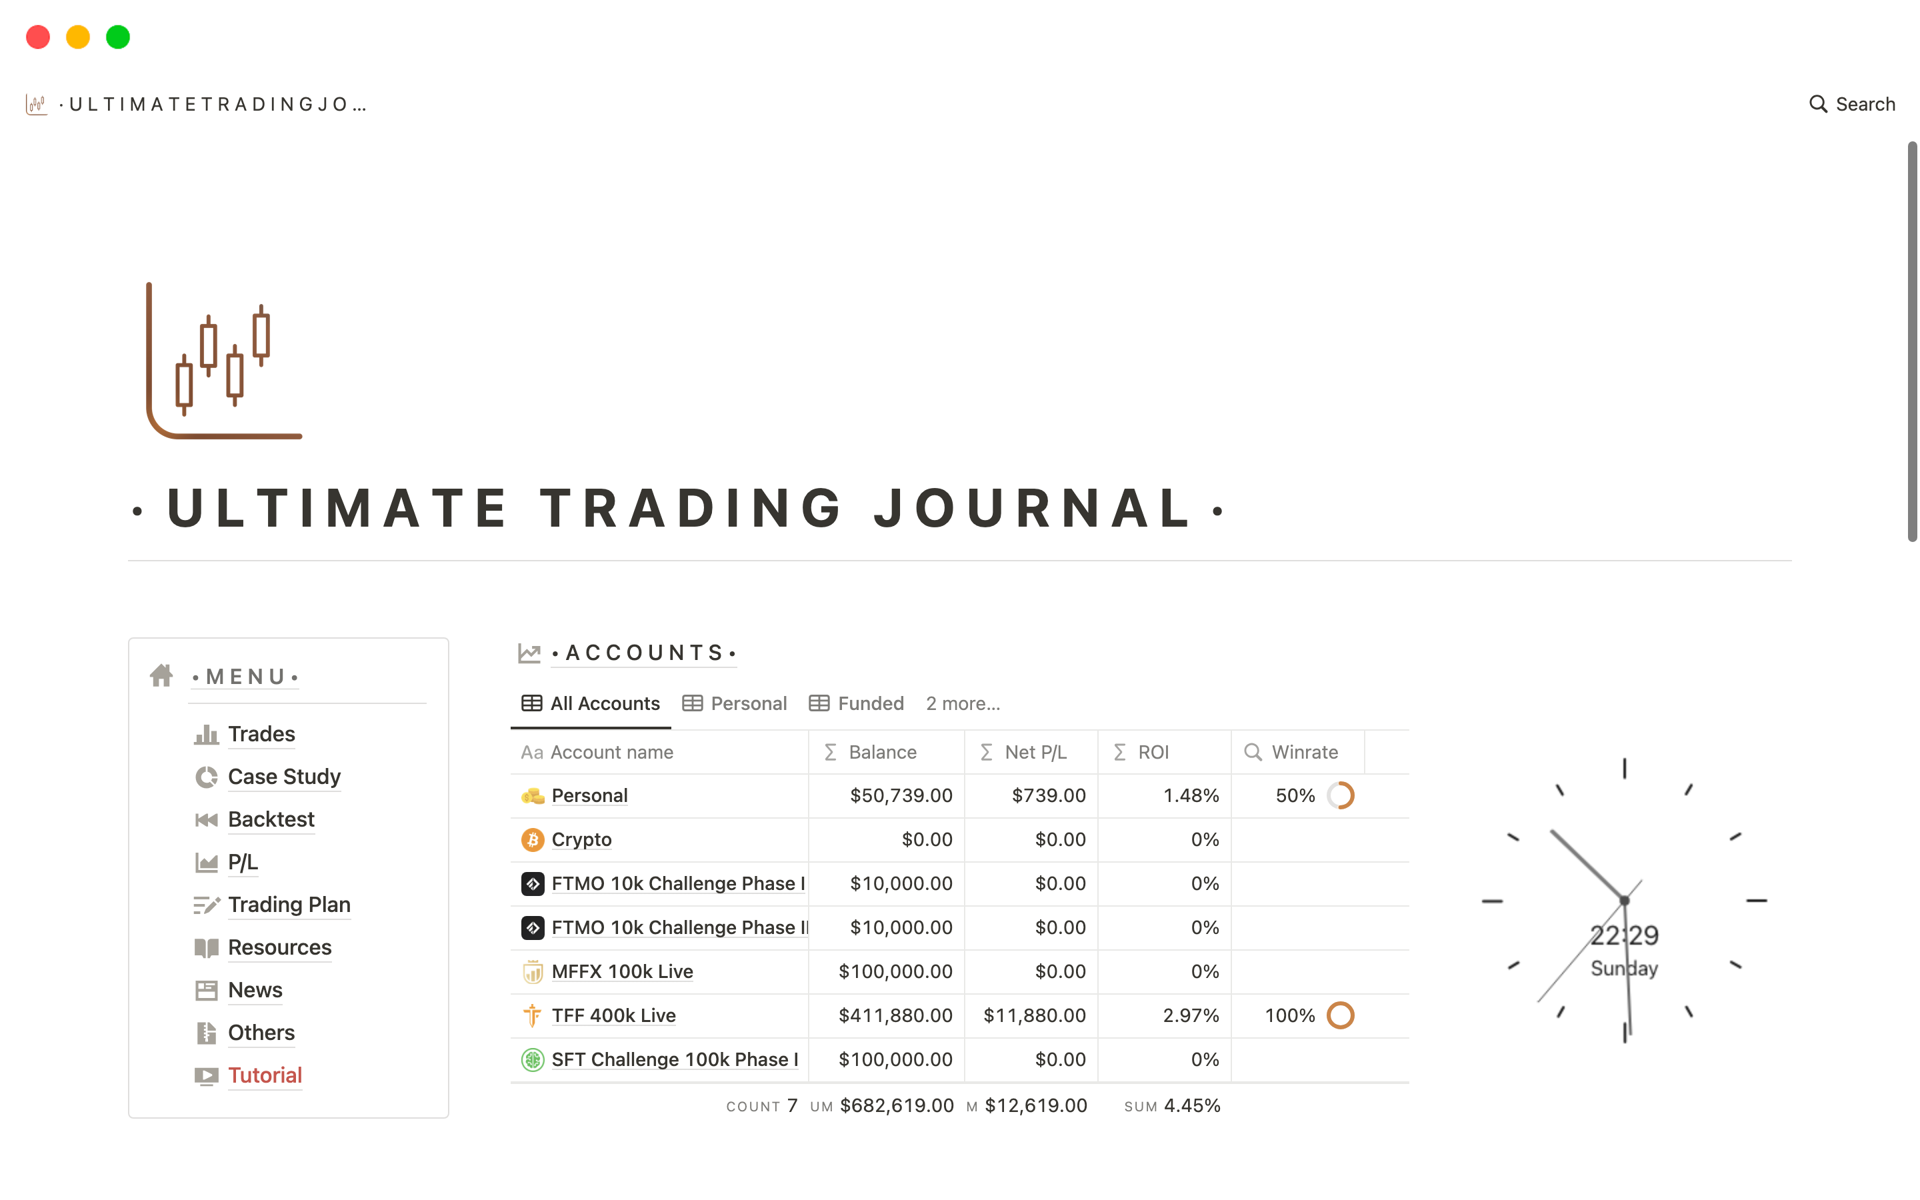 Vista previa de plantilla para Ultimate Trading Journal